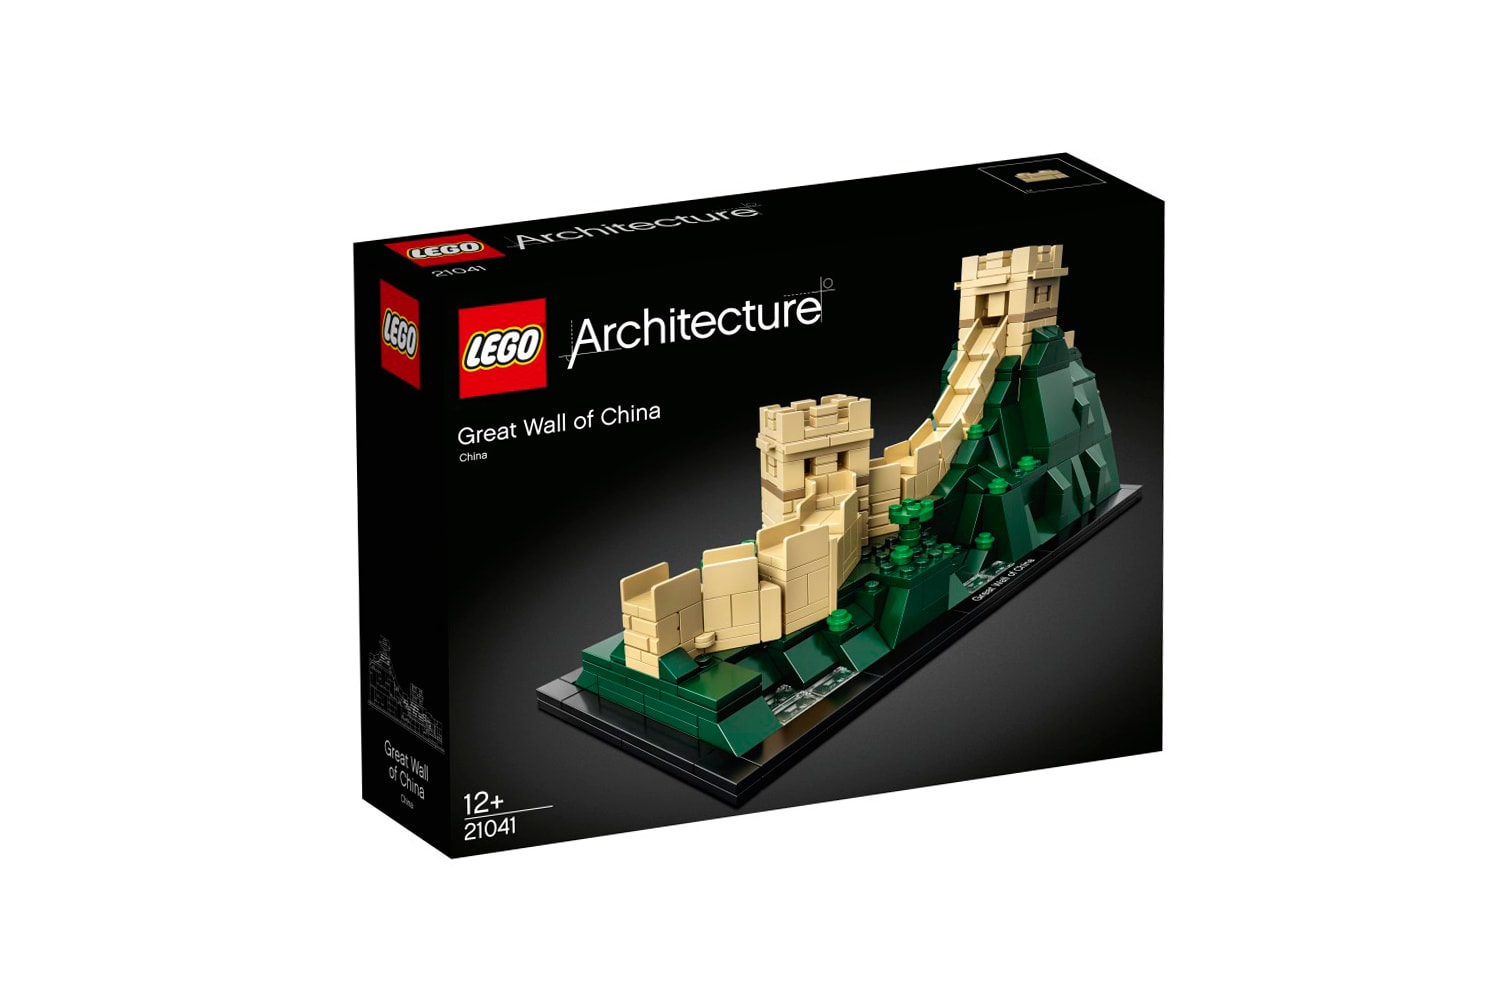 LEGO Architecture 即將推出中國萬里長城及美國自由神像